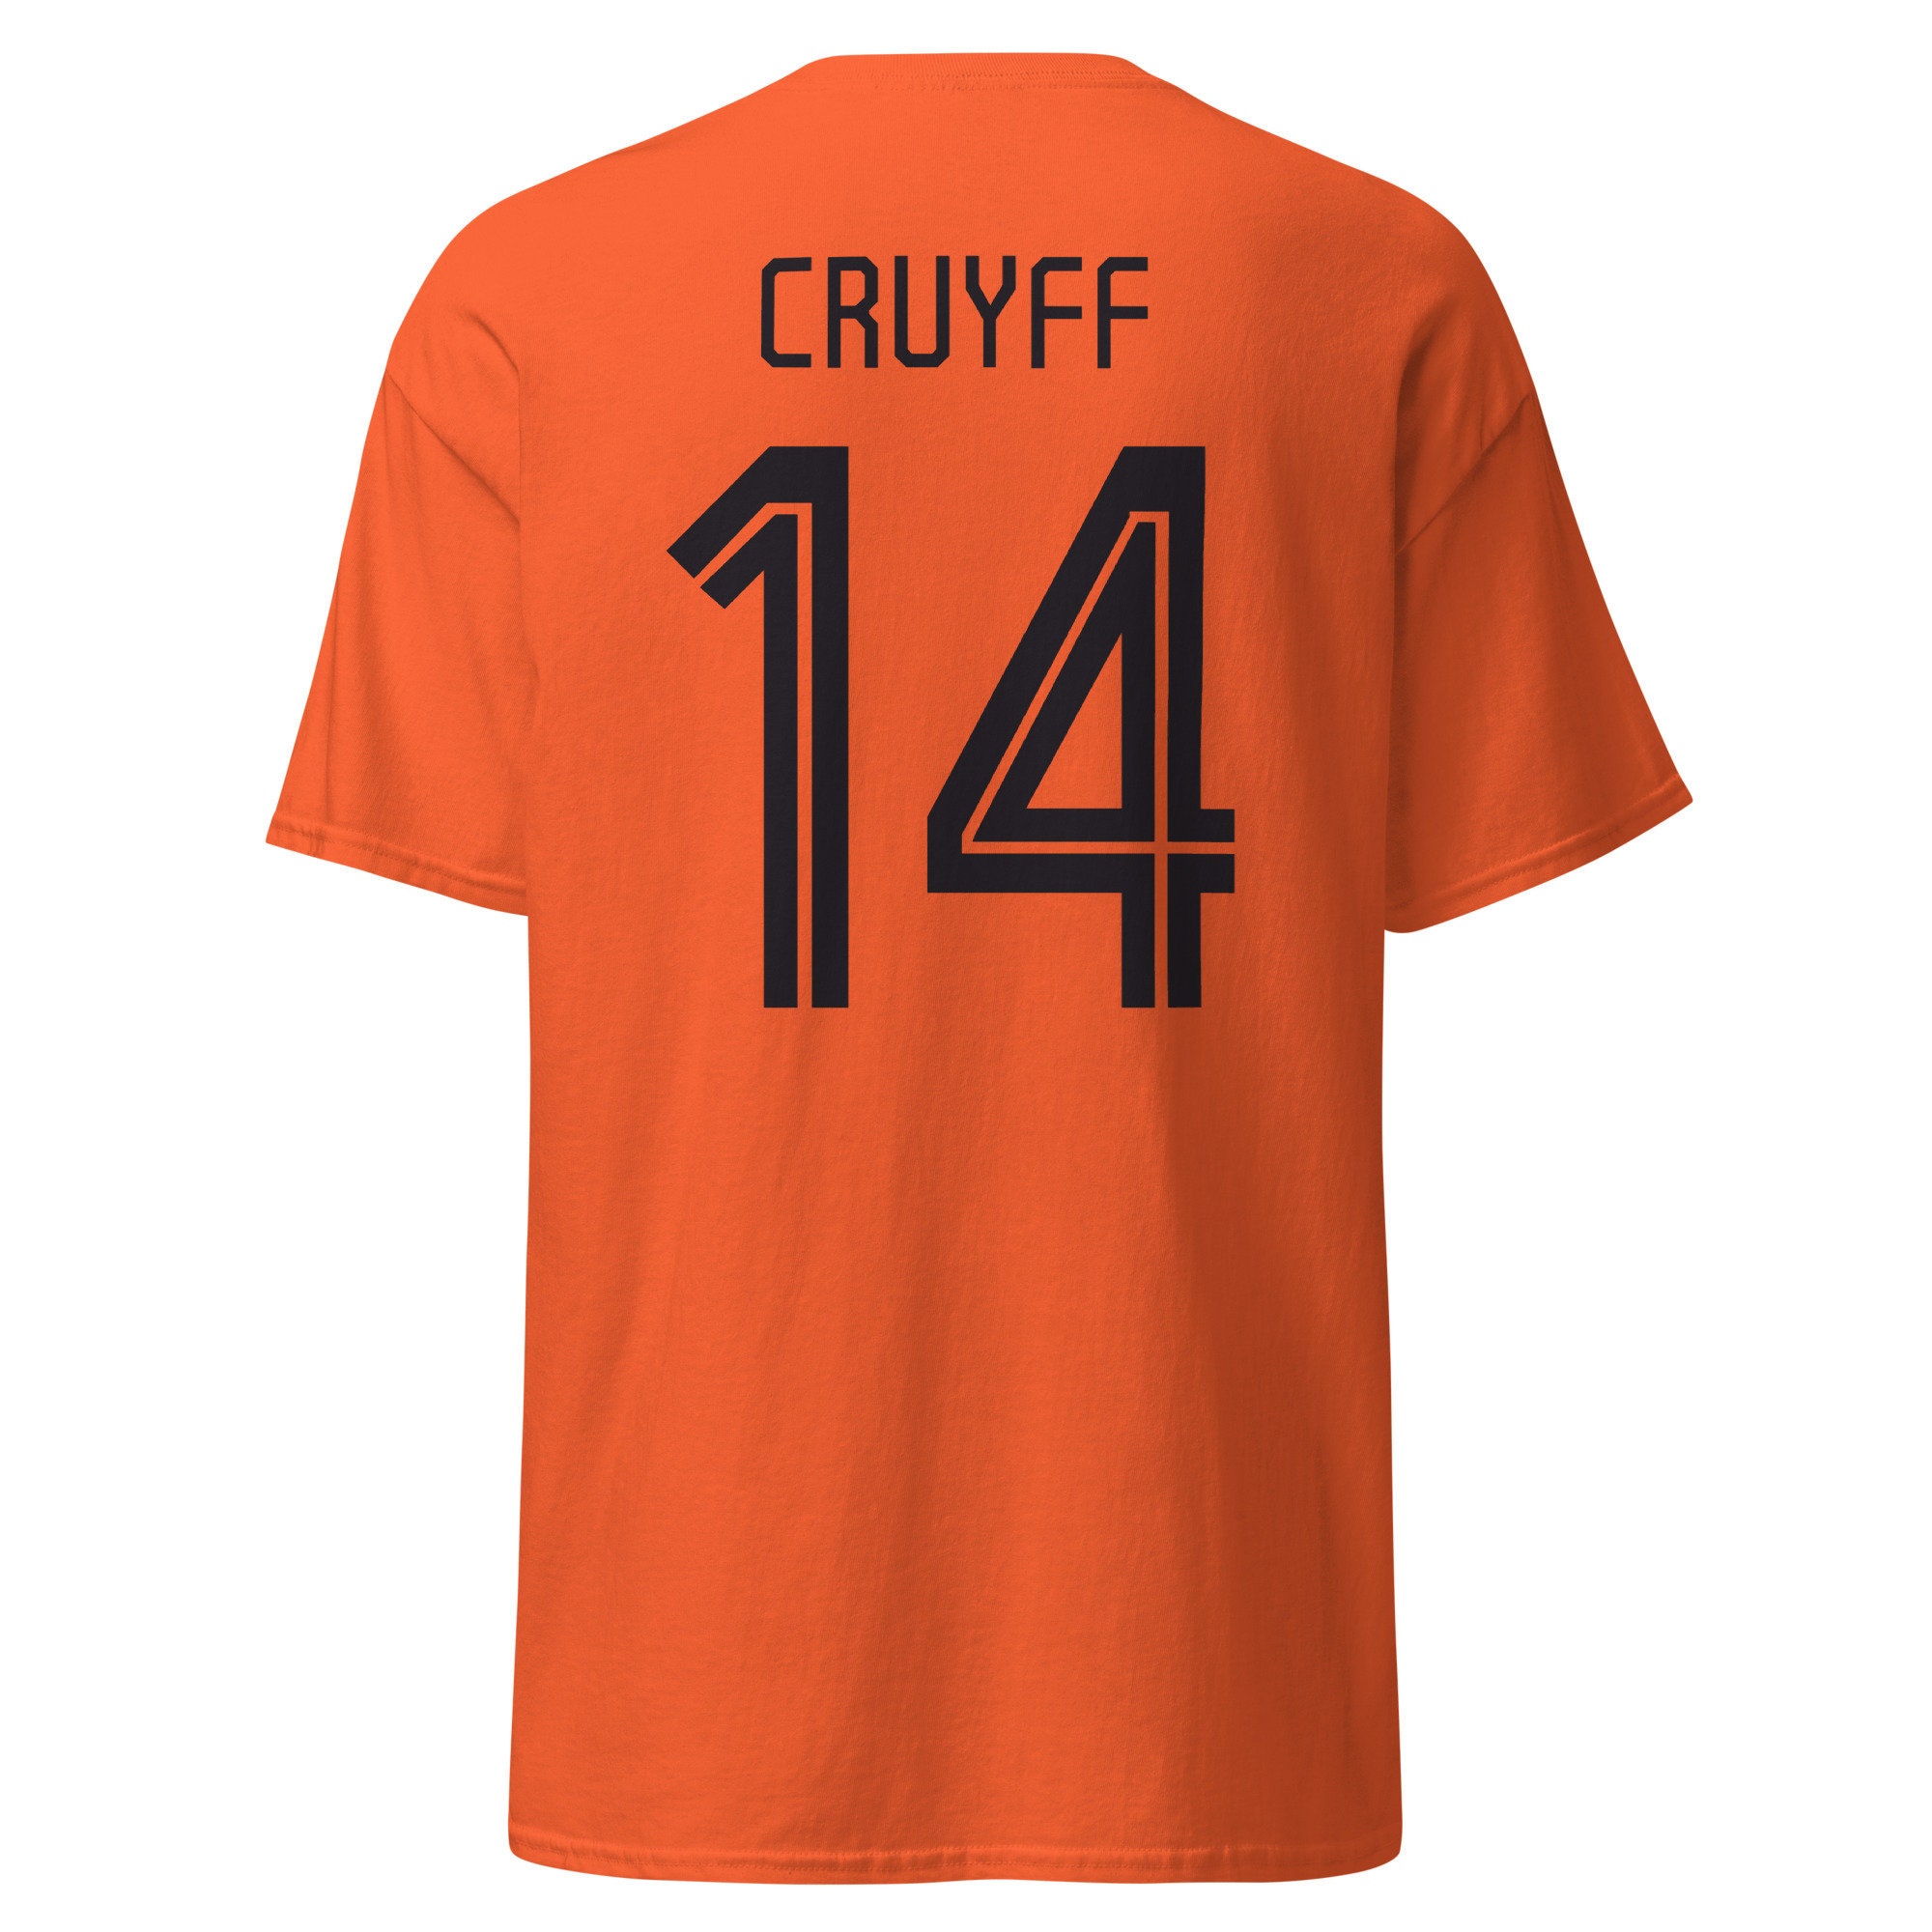 maillot ajax cruyff